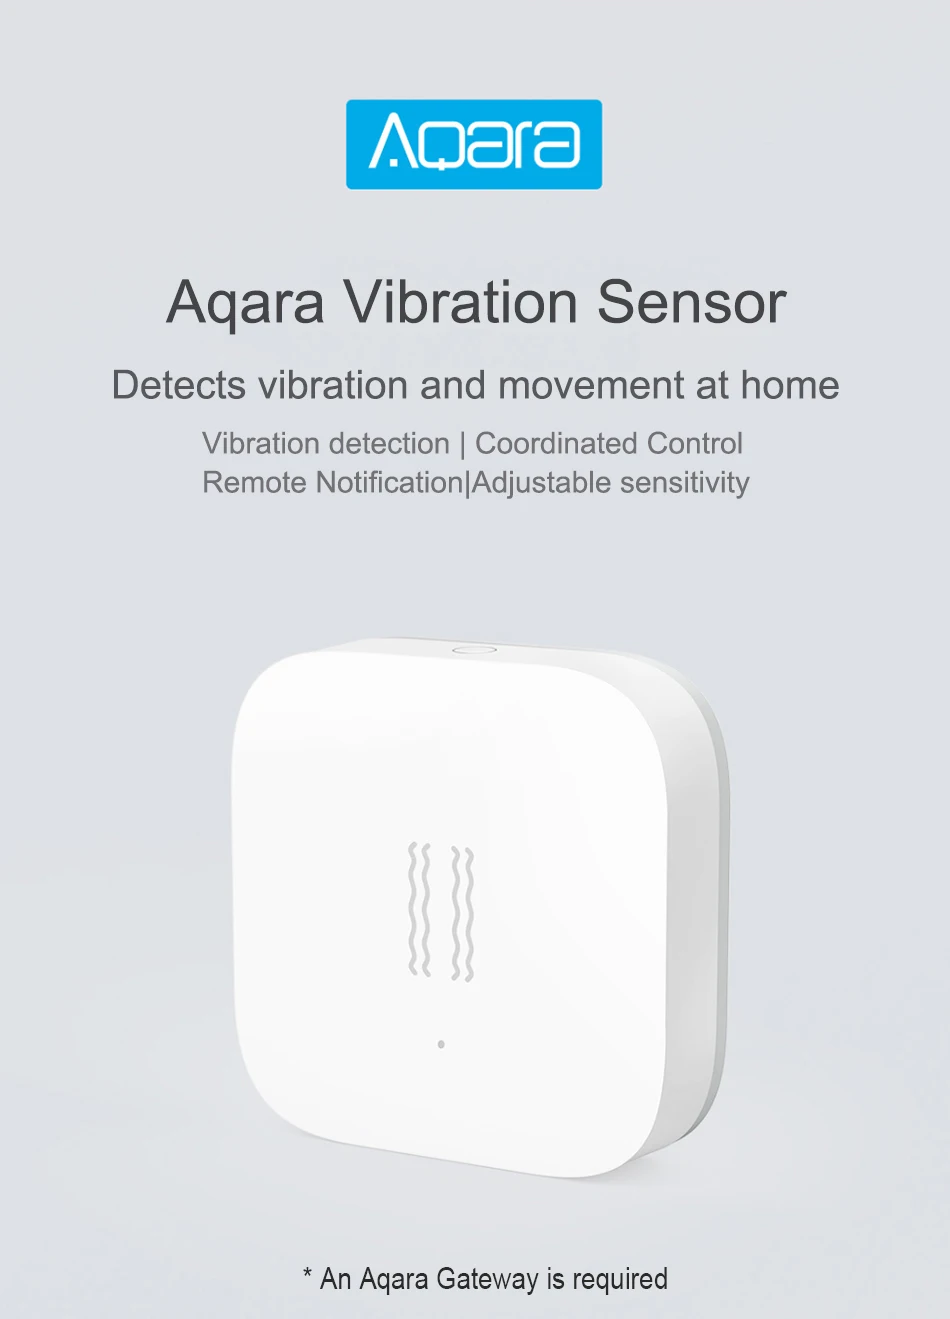 Aqara датчик вибрации Zigbee Shock сенсор вибрации обнаружения сигнализации монитор Встроенный гироскоп датчик движения для Mi Home App